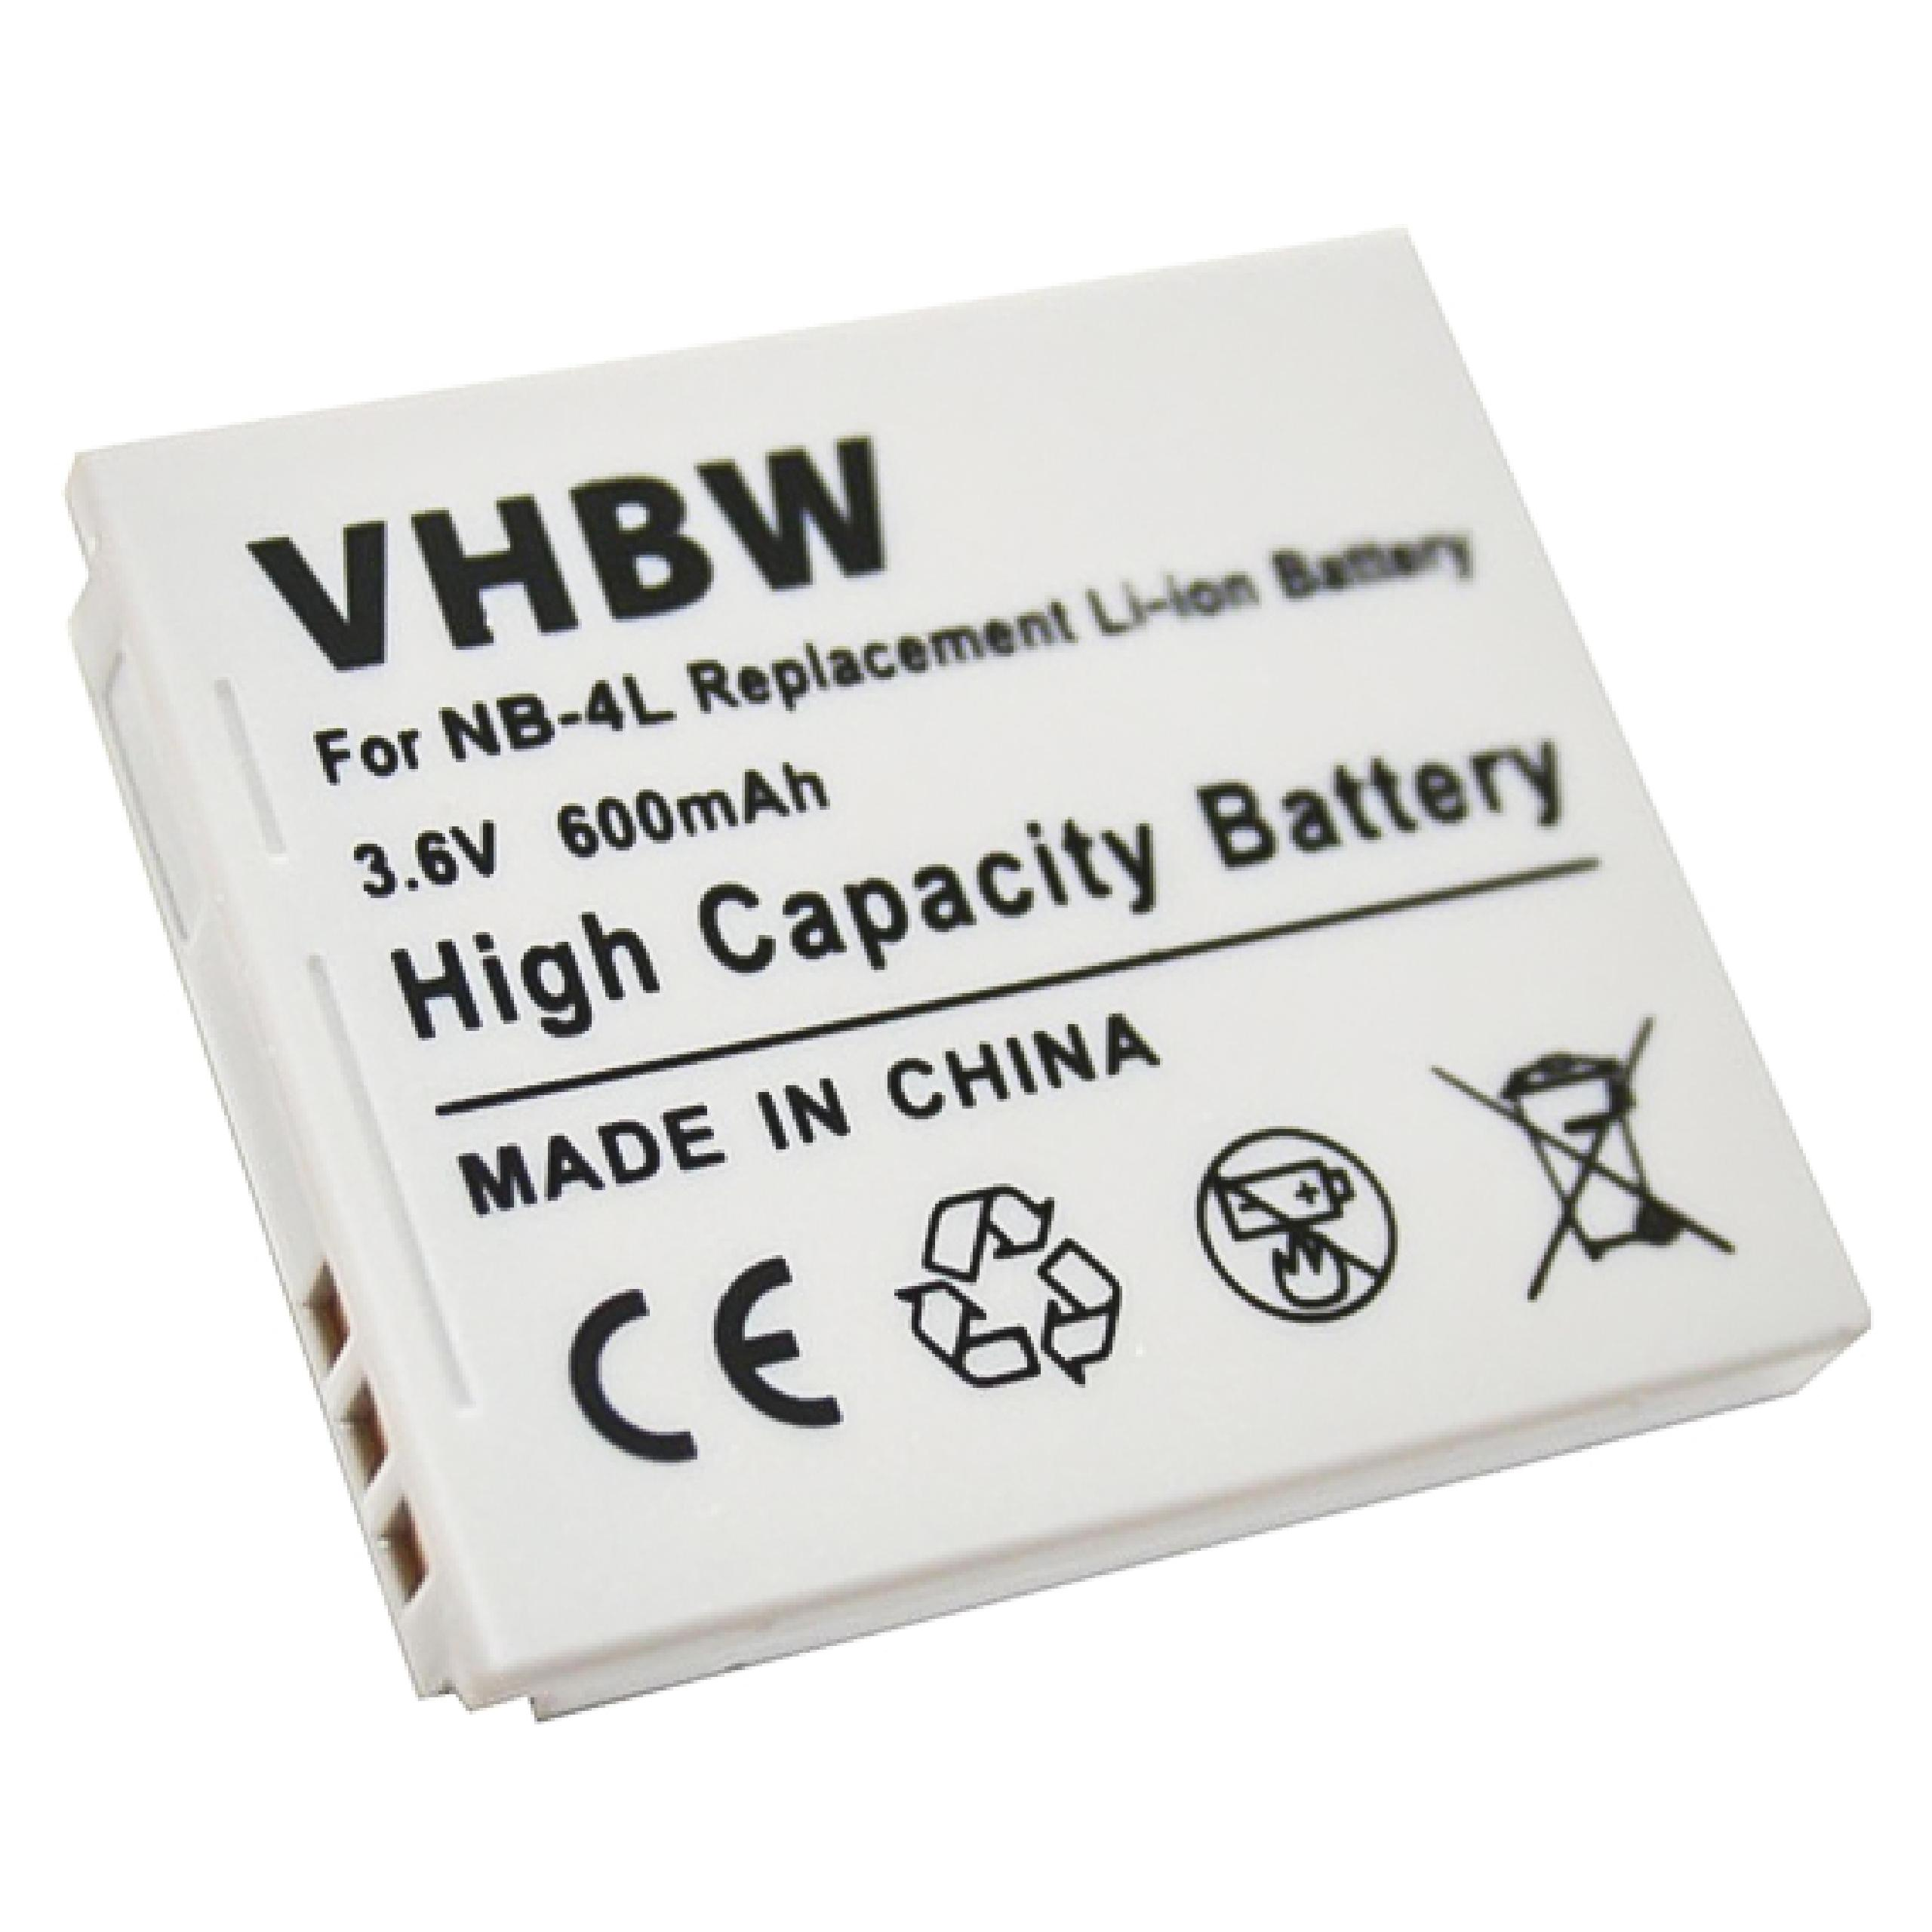 VHBW kompatibel mit Canon Legria 600 3.6 Mini Volt, Akku Kamera, - Li-Ion